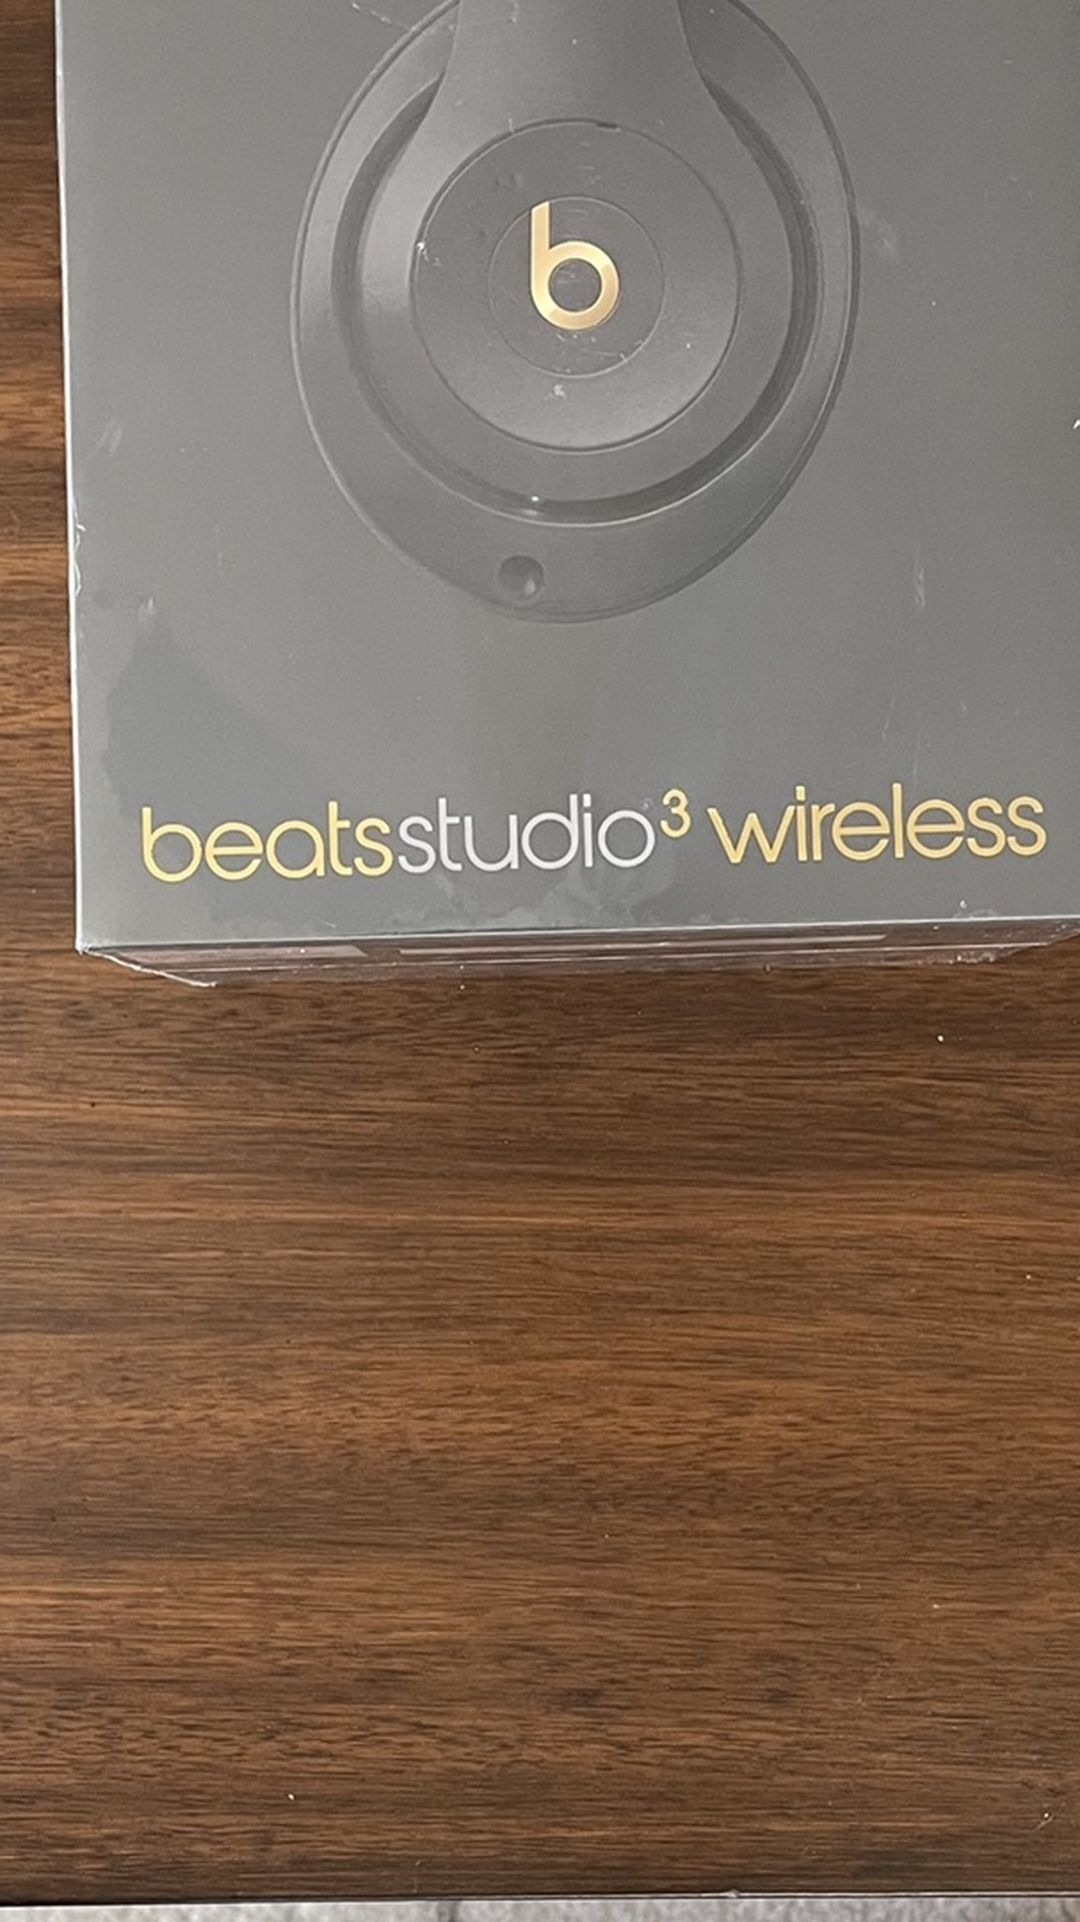 [Brand New, Unopened] Beats Studio 3 Wireless